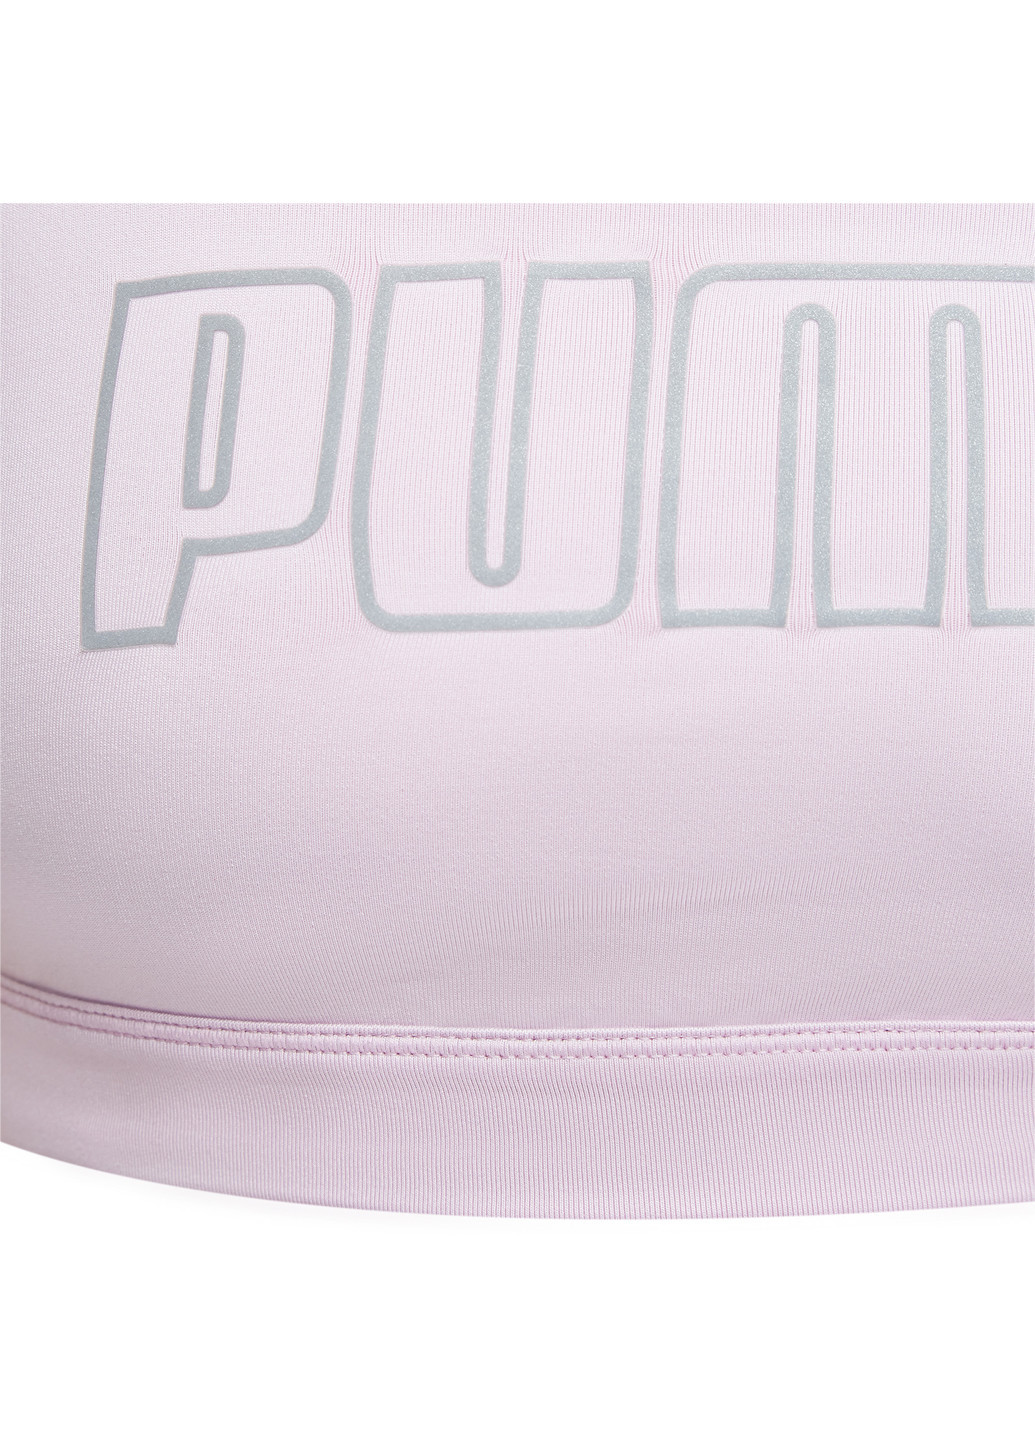 Рожева всесезон топ-бра active bra poly w Puma